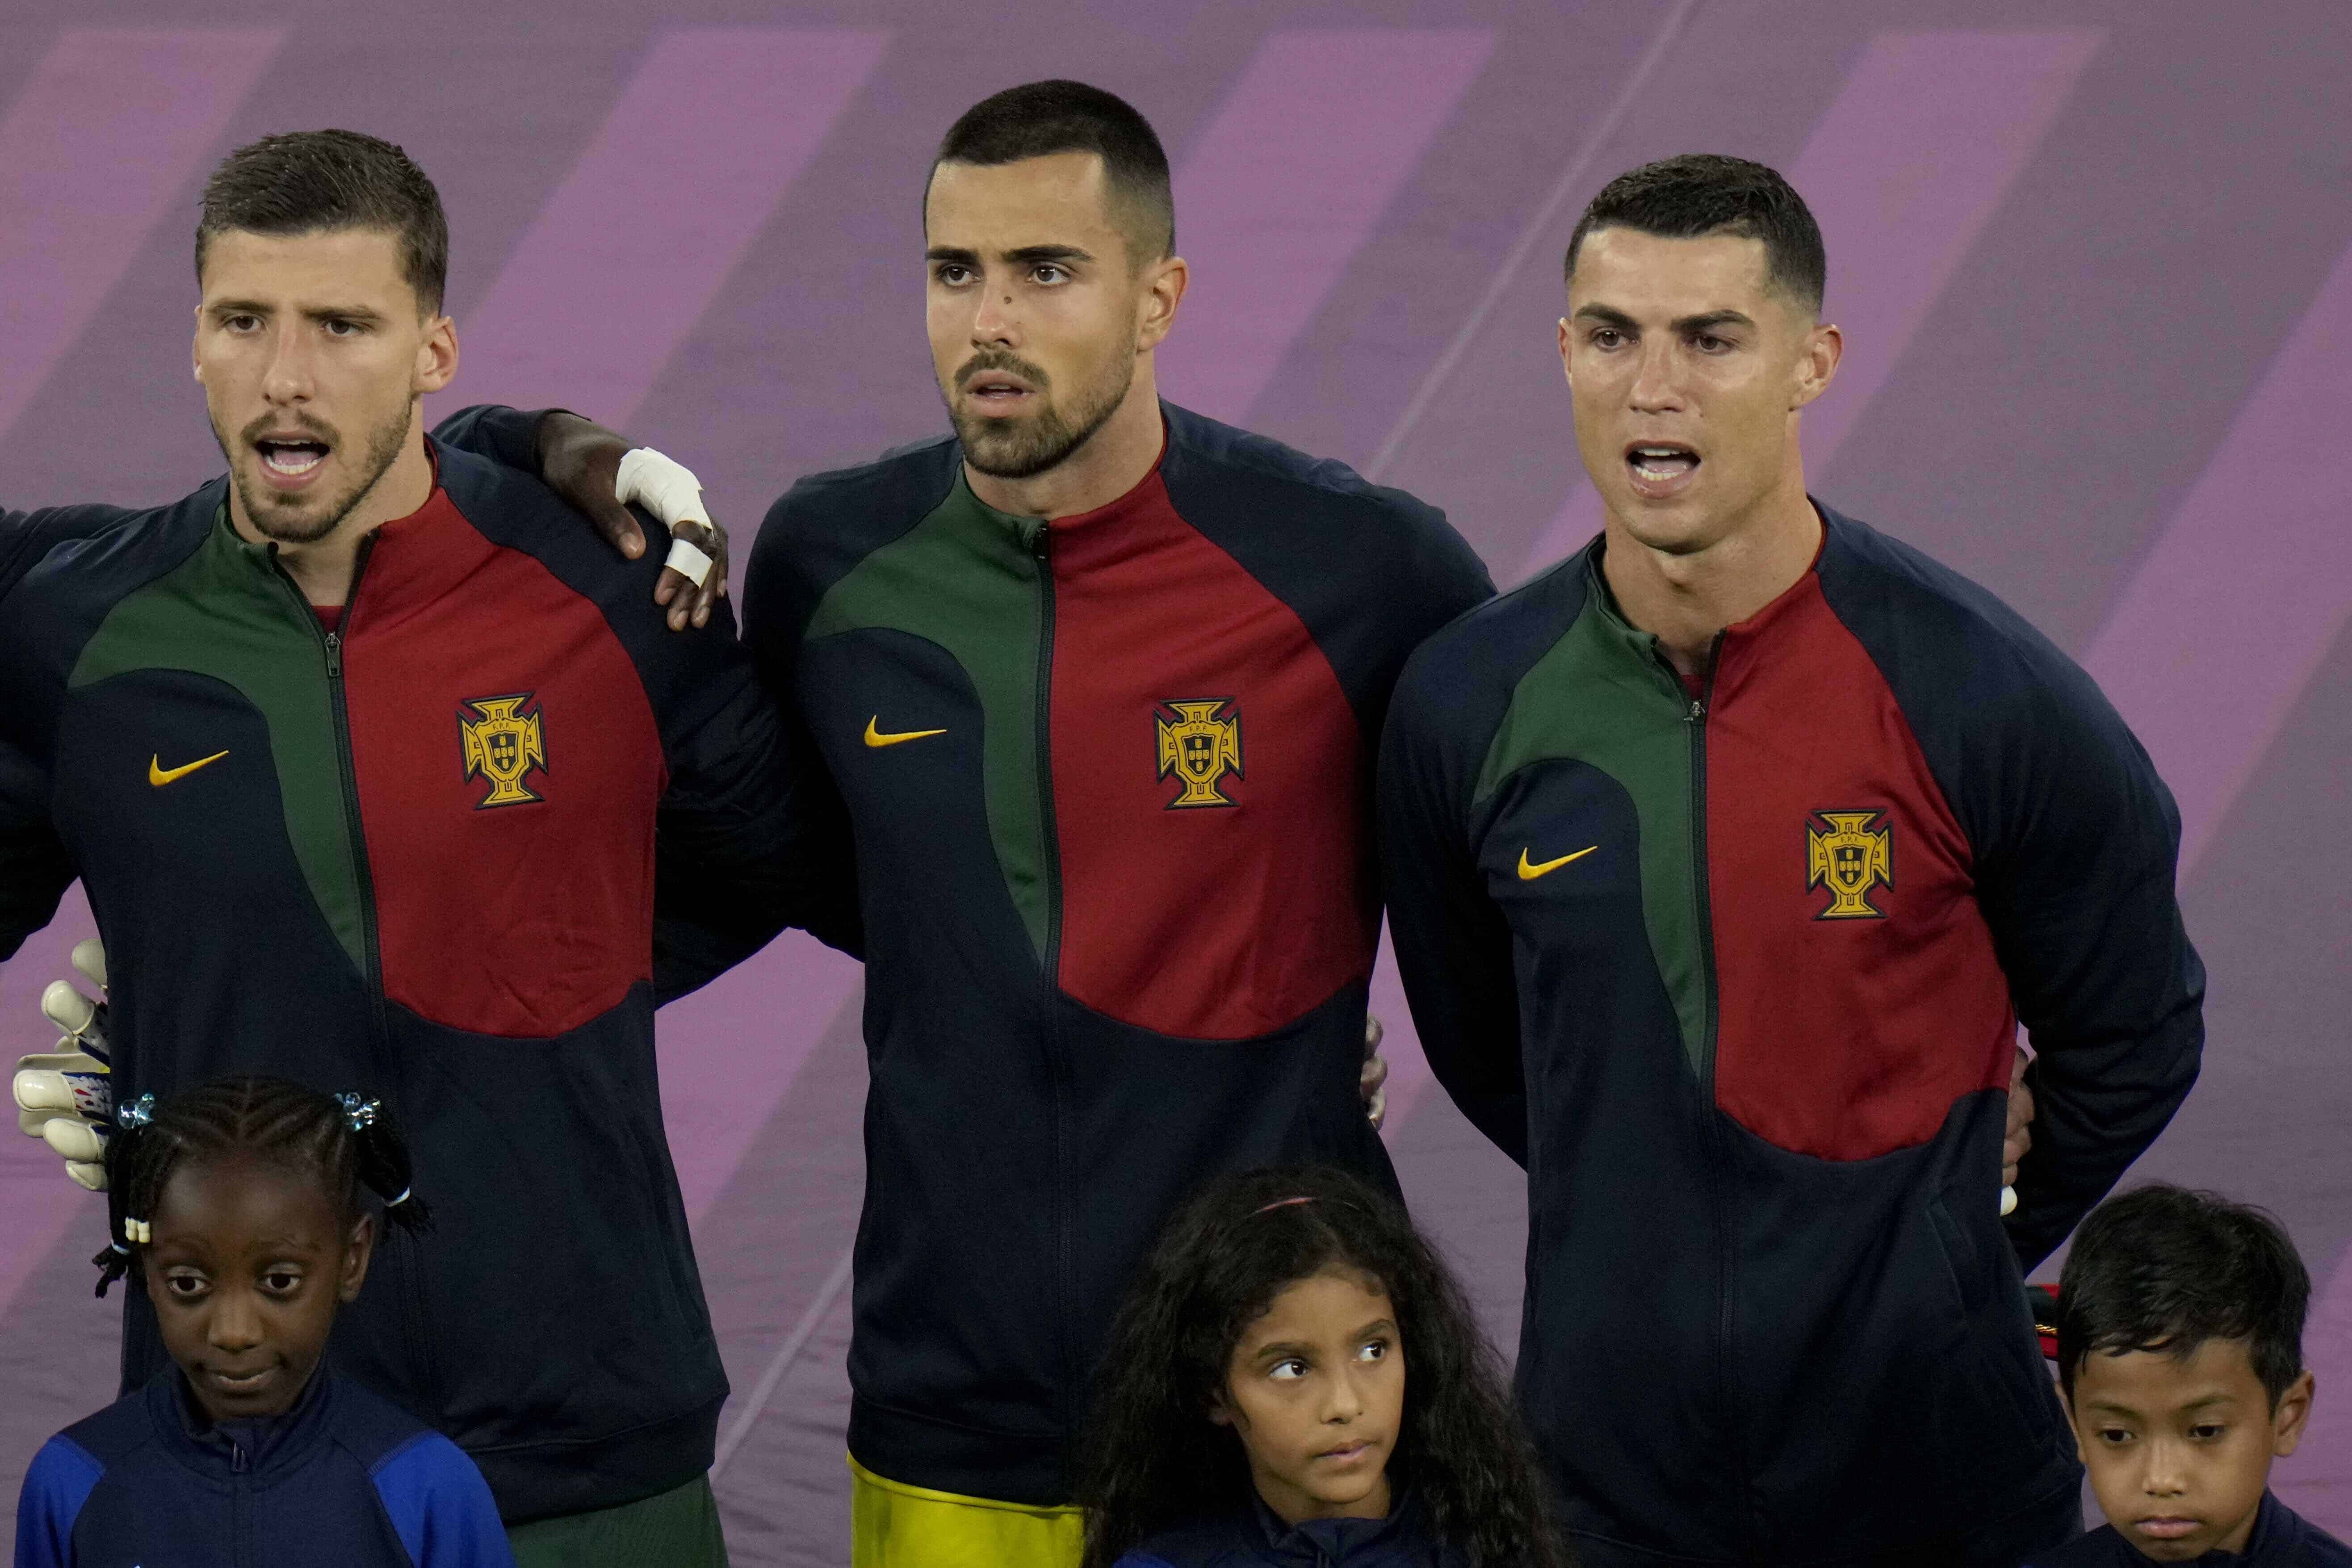 Cristiano Ronaldo de Portugal canta el himno nacional junto a sus compañeros de equipo antes del partido de fútbol del grupo H de la Copa Mundial entre Portugal y Ghana, en el Estadio 974 en Doha, Qatar, el jueves 24 de noviembre de 2022.